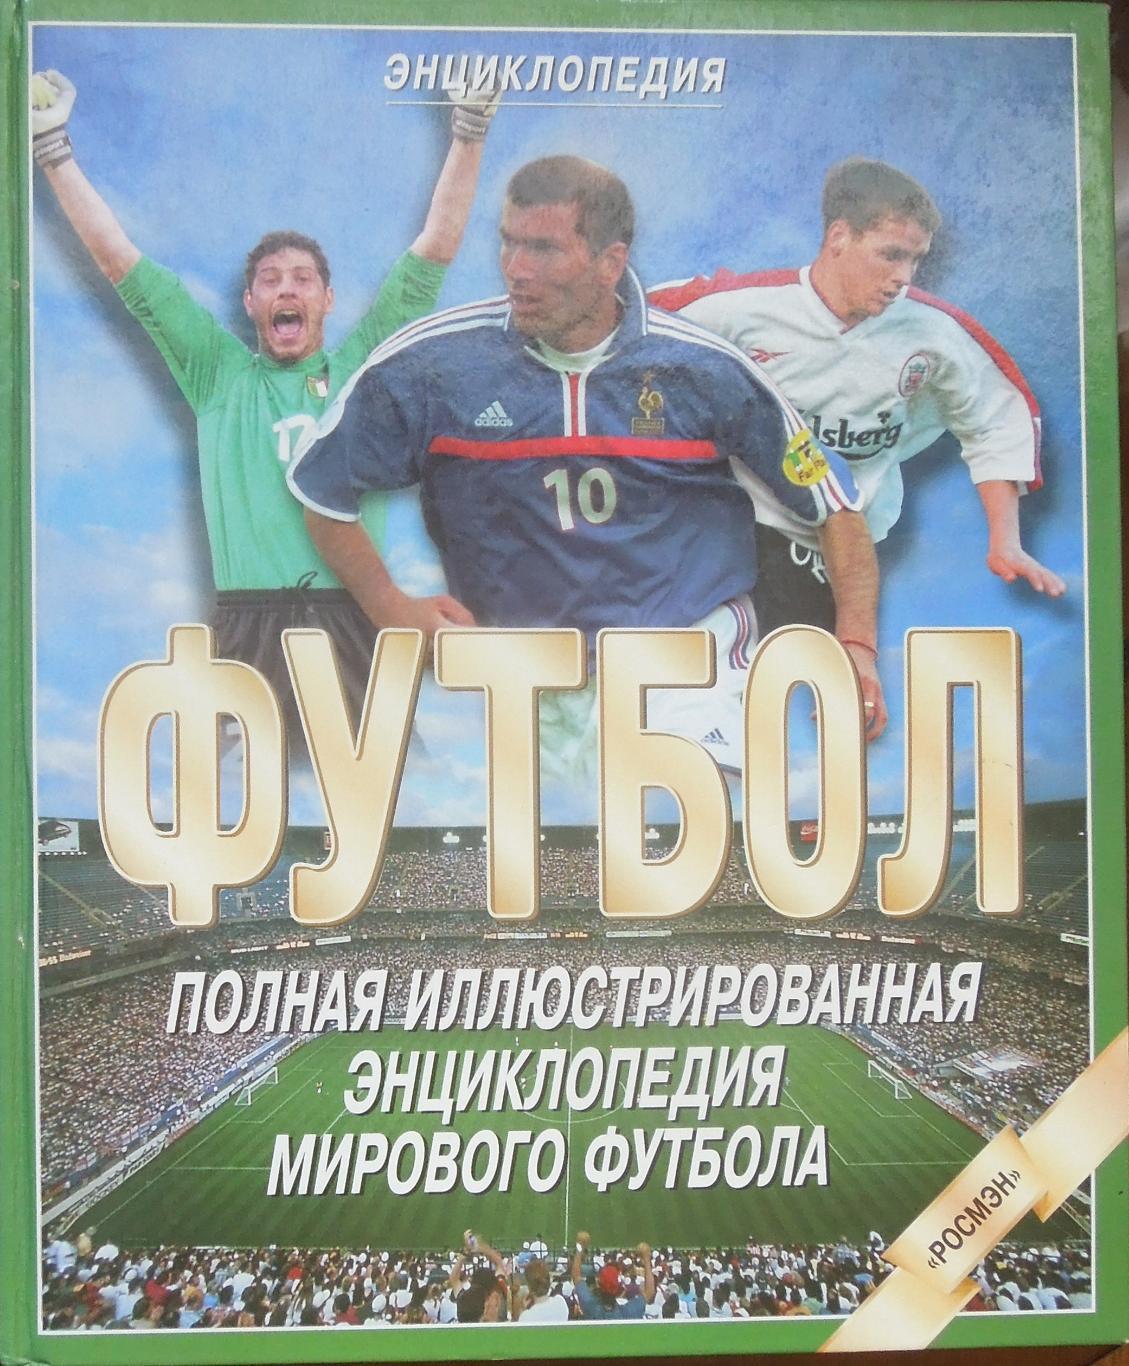 Полная иллюстрированная энциклопедия мирового футбола(256 стр). Выпуск 2000 года